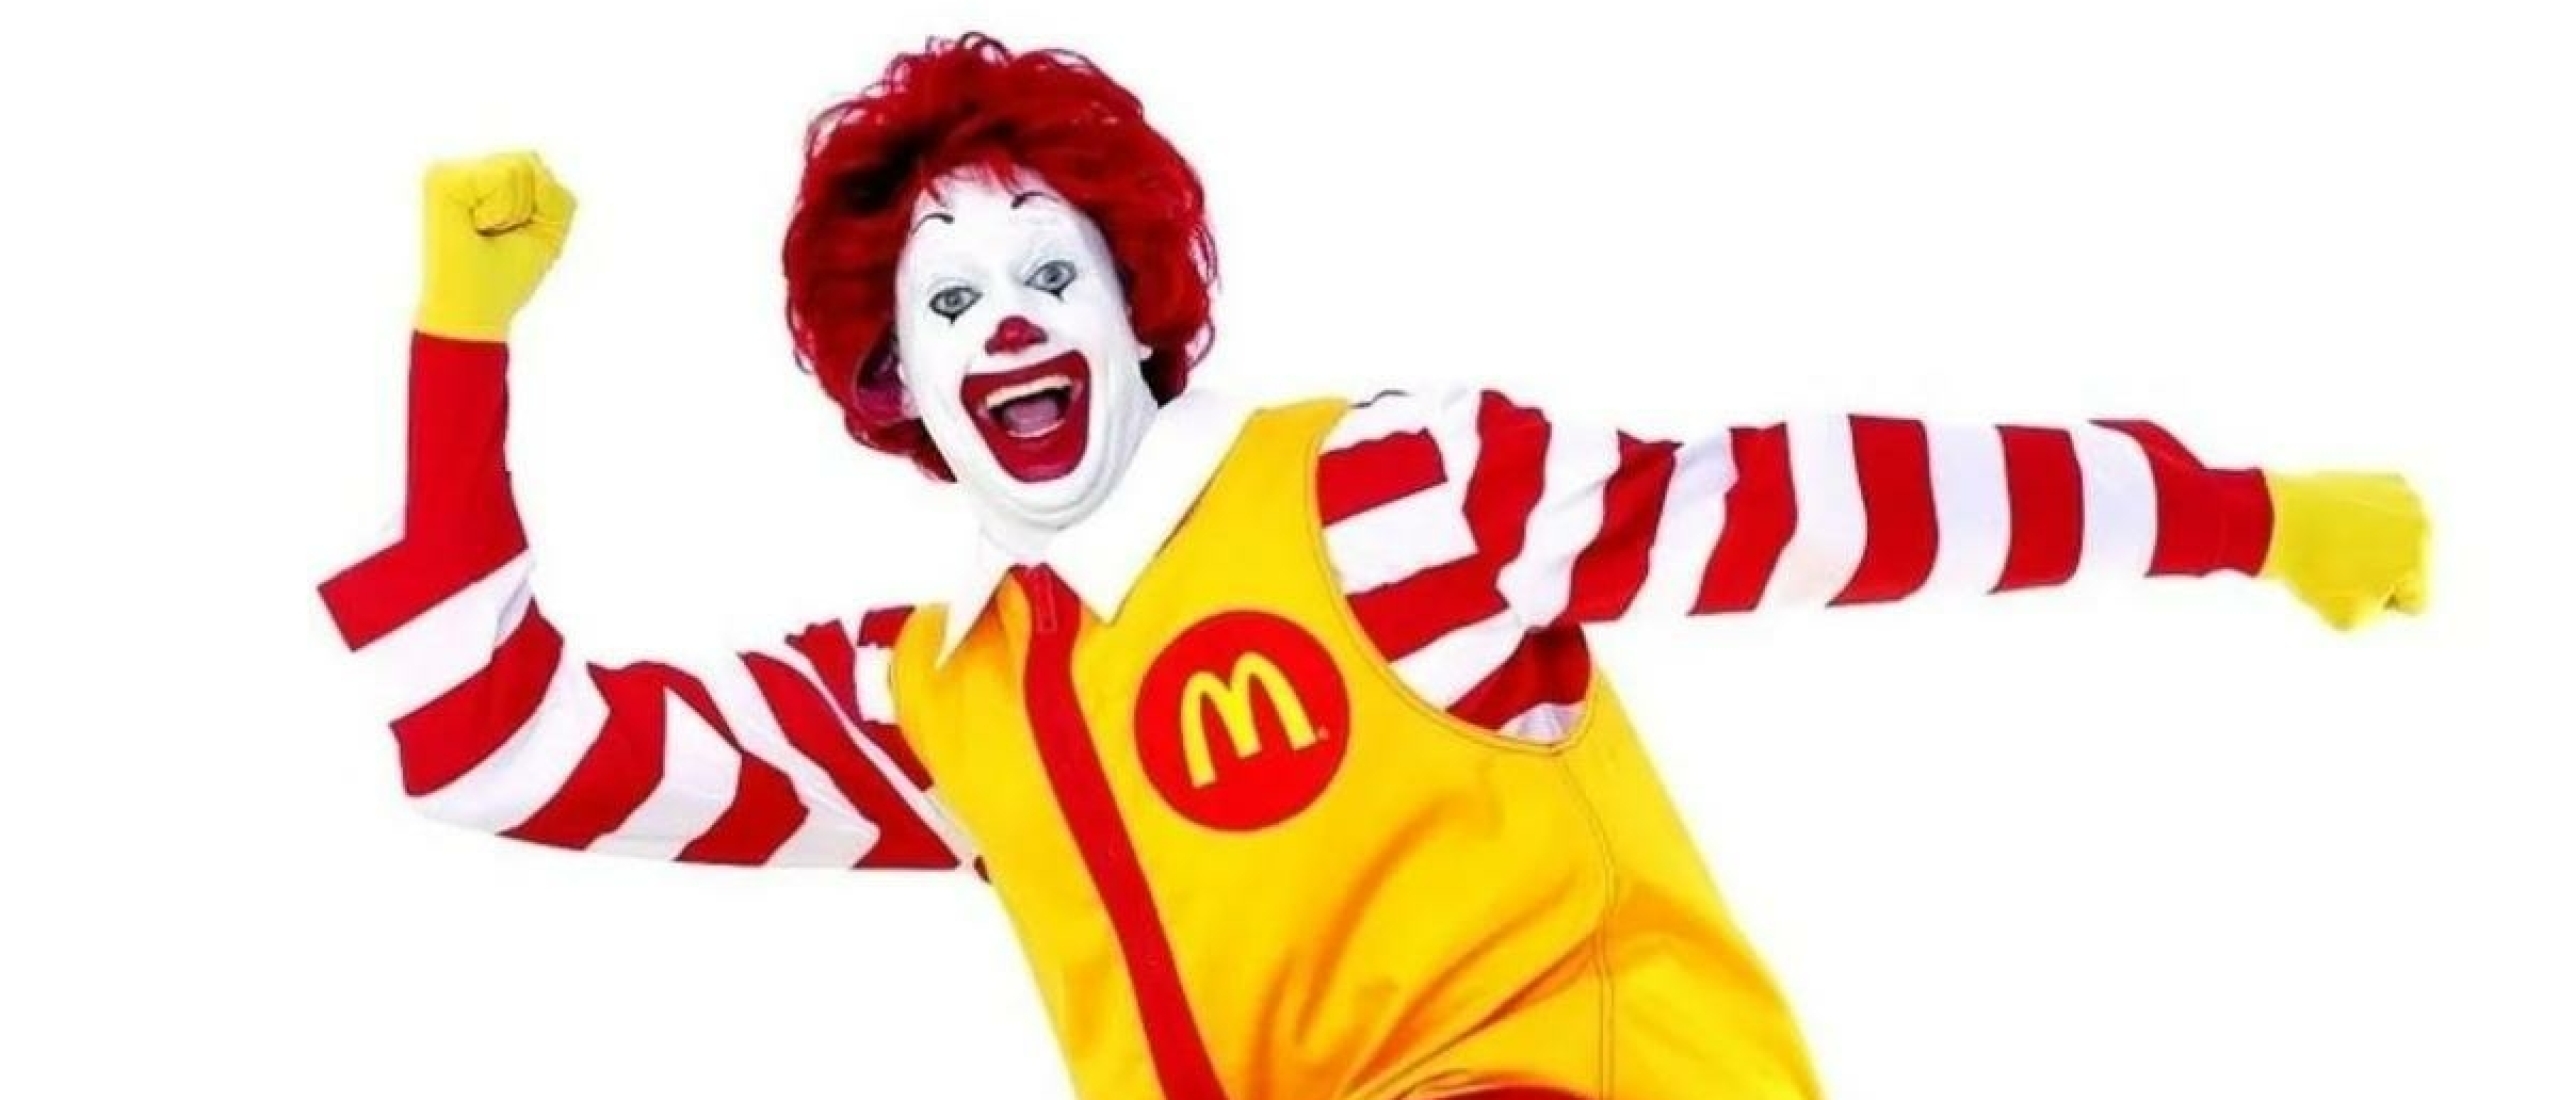 McDonald's maakte een enorme indruk op mij